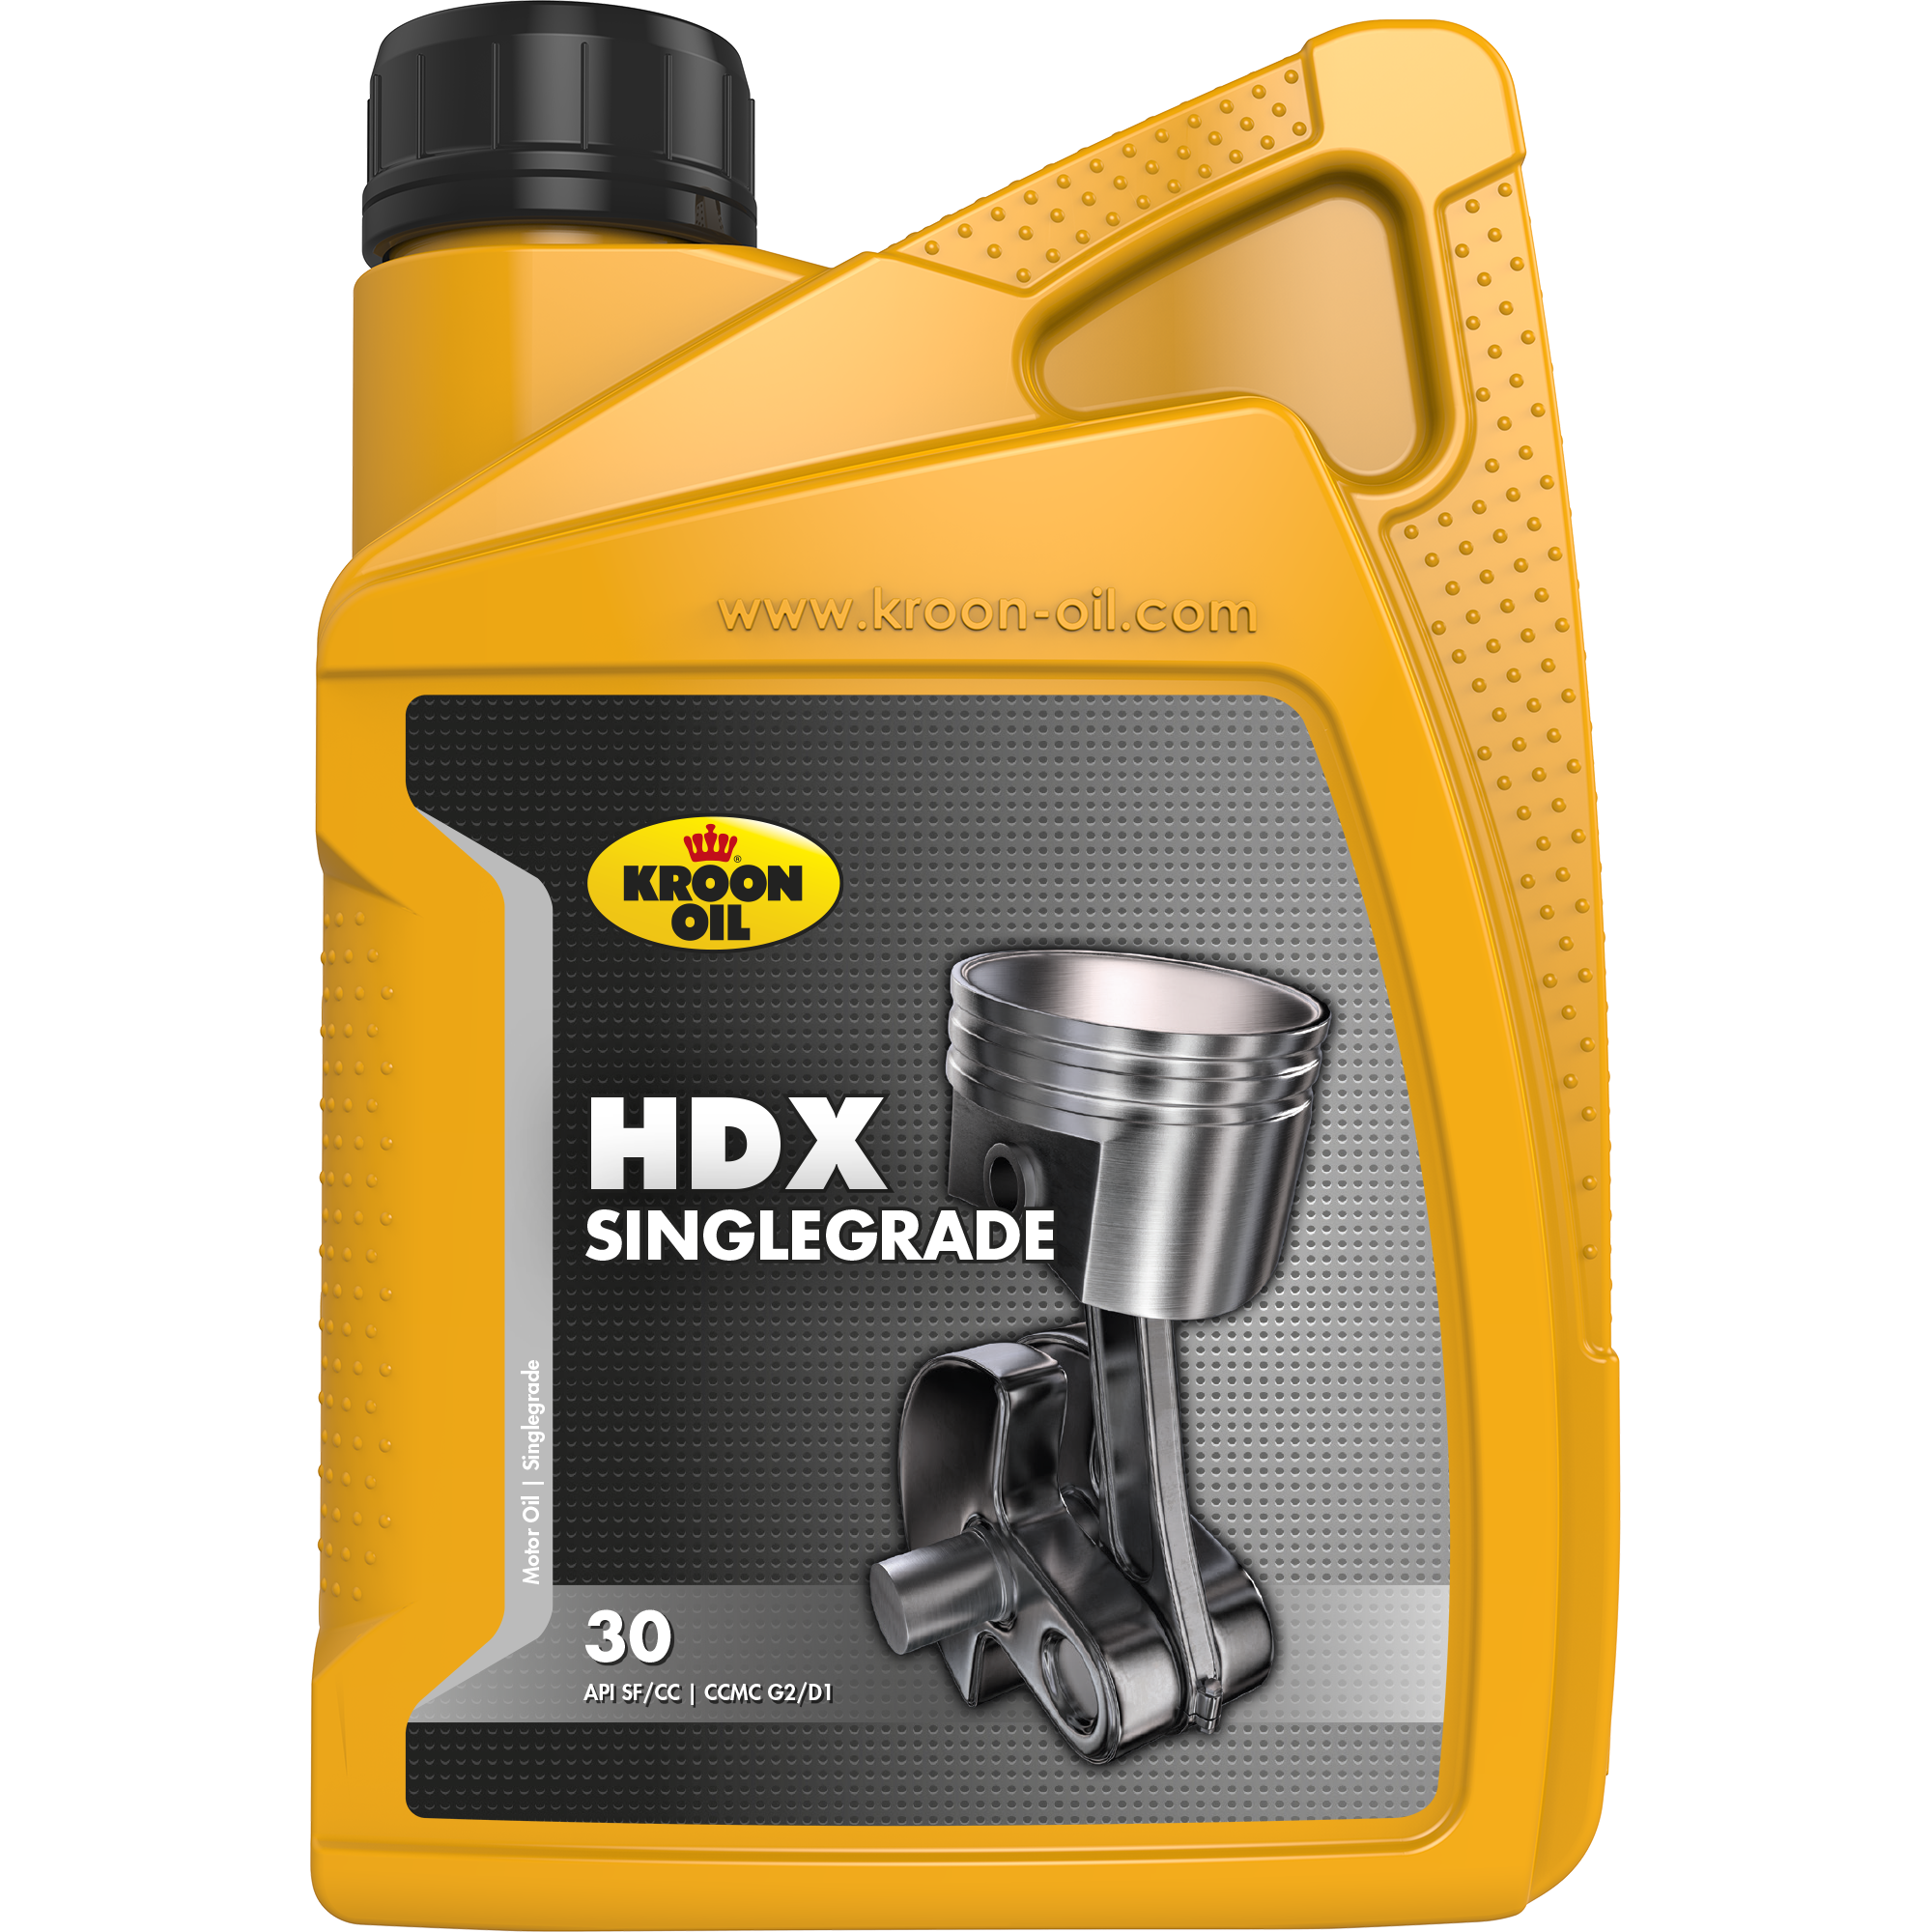 00206-1 HDX 30 is een singlegrade motorolie gebaseerd op hoogwaardige solvent geraffineerde basisoliën.